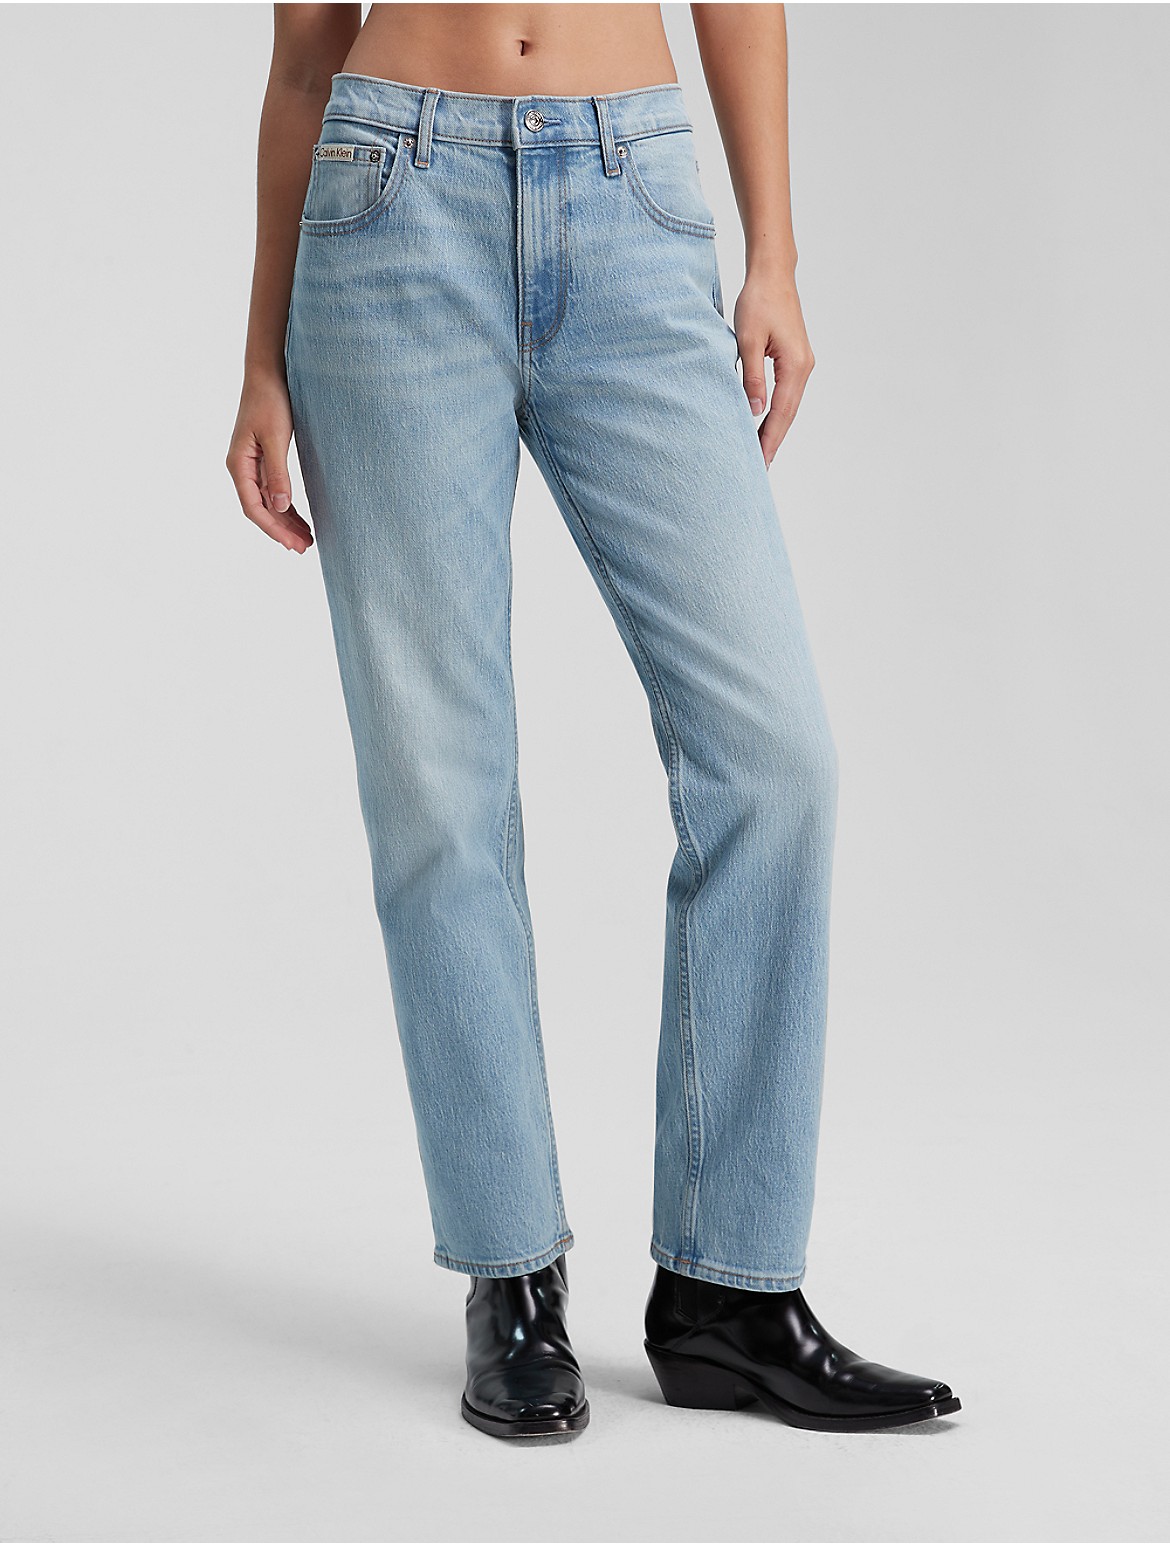 Calvin Klein Women's Original Straight Fit Jean - Blue - 28